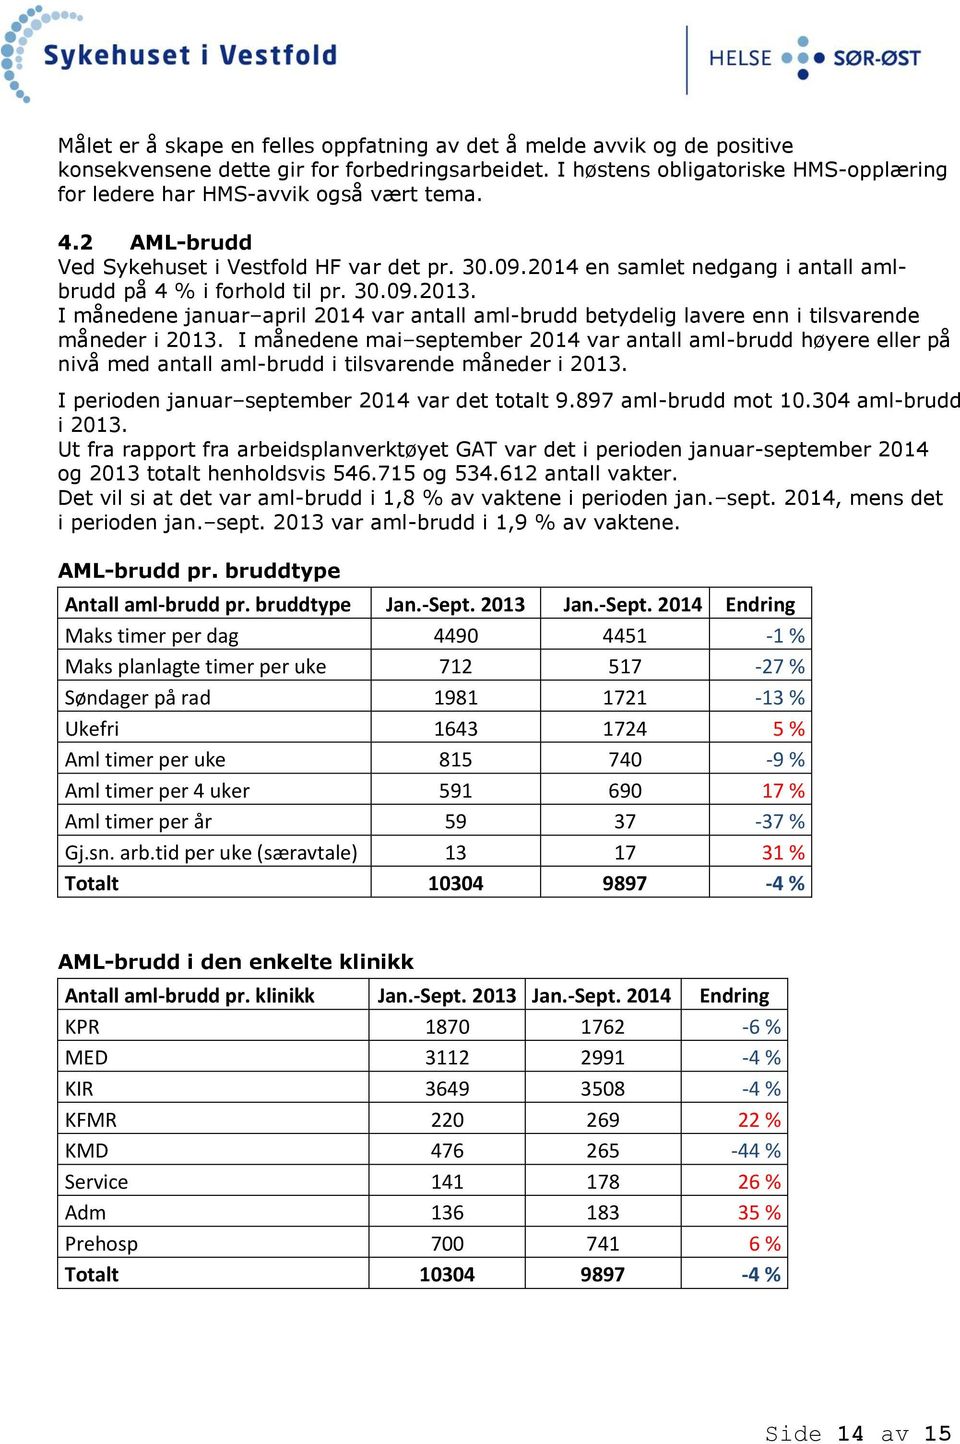 2014 en samlet nedgang i antall amlbrudd på 4 % i forhold til pr. 30.09.2013. I månedene januar april 2014 var antall aml-brudd betydelig lavere enn i tilsvarende måneder i 2013.